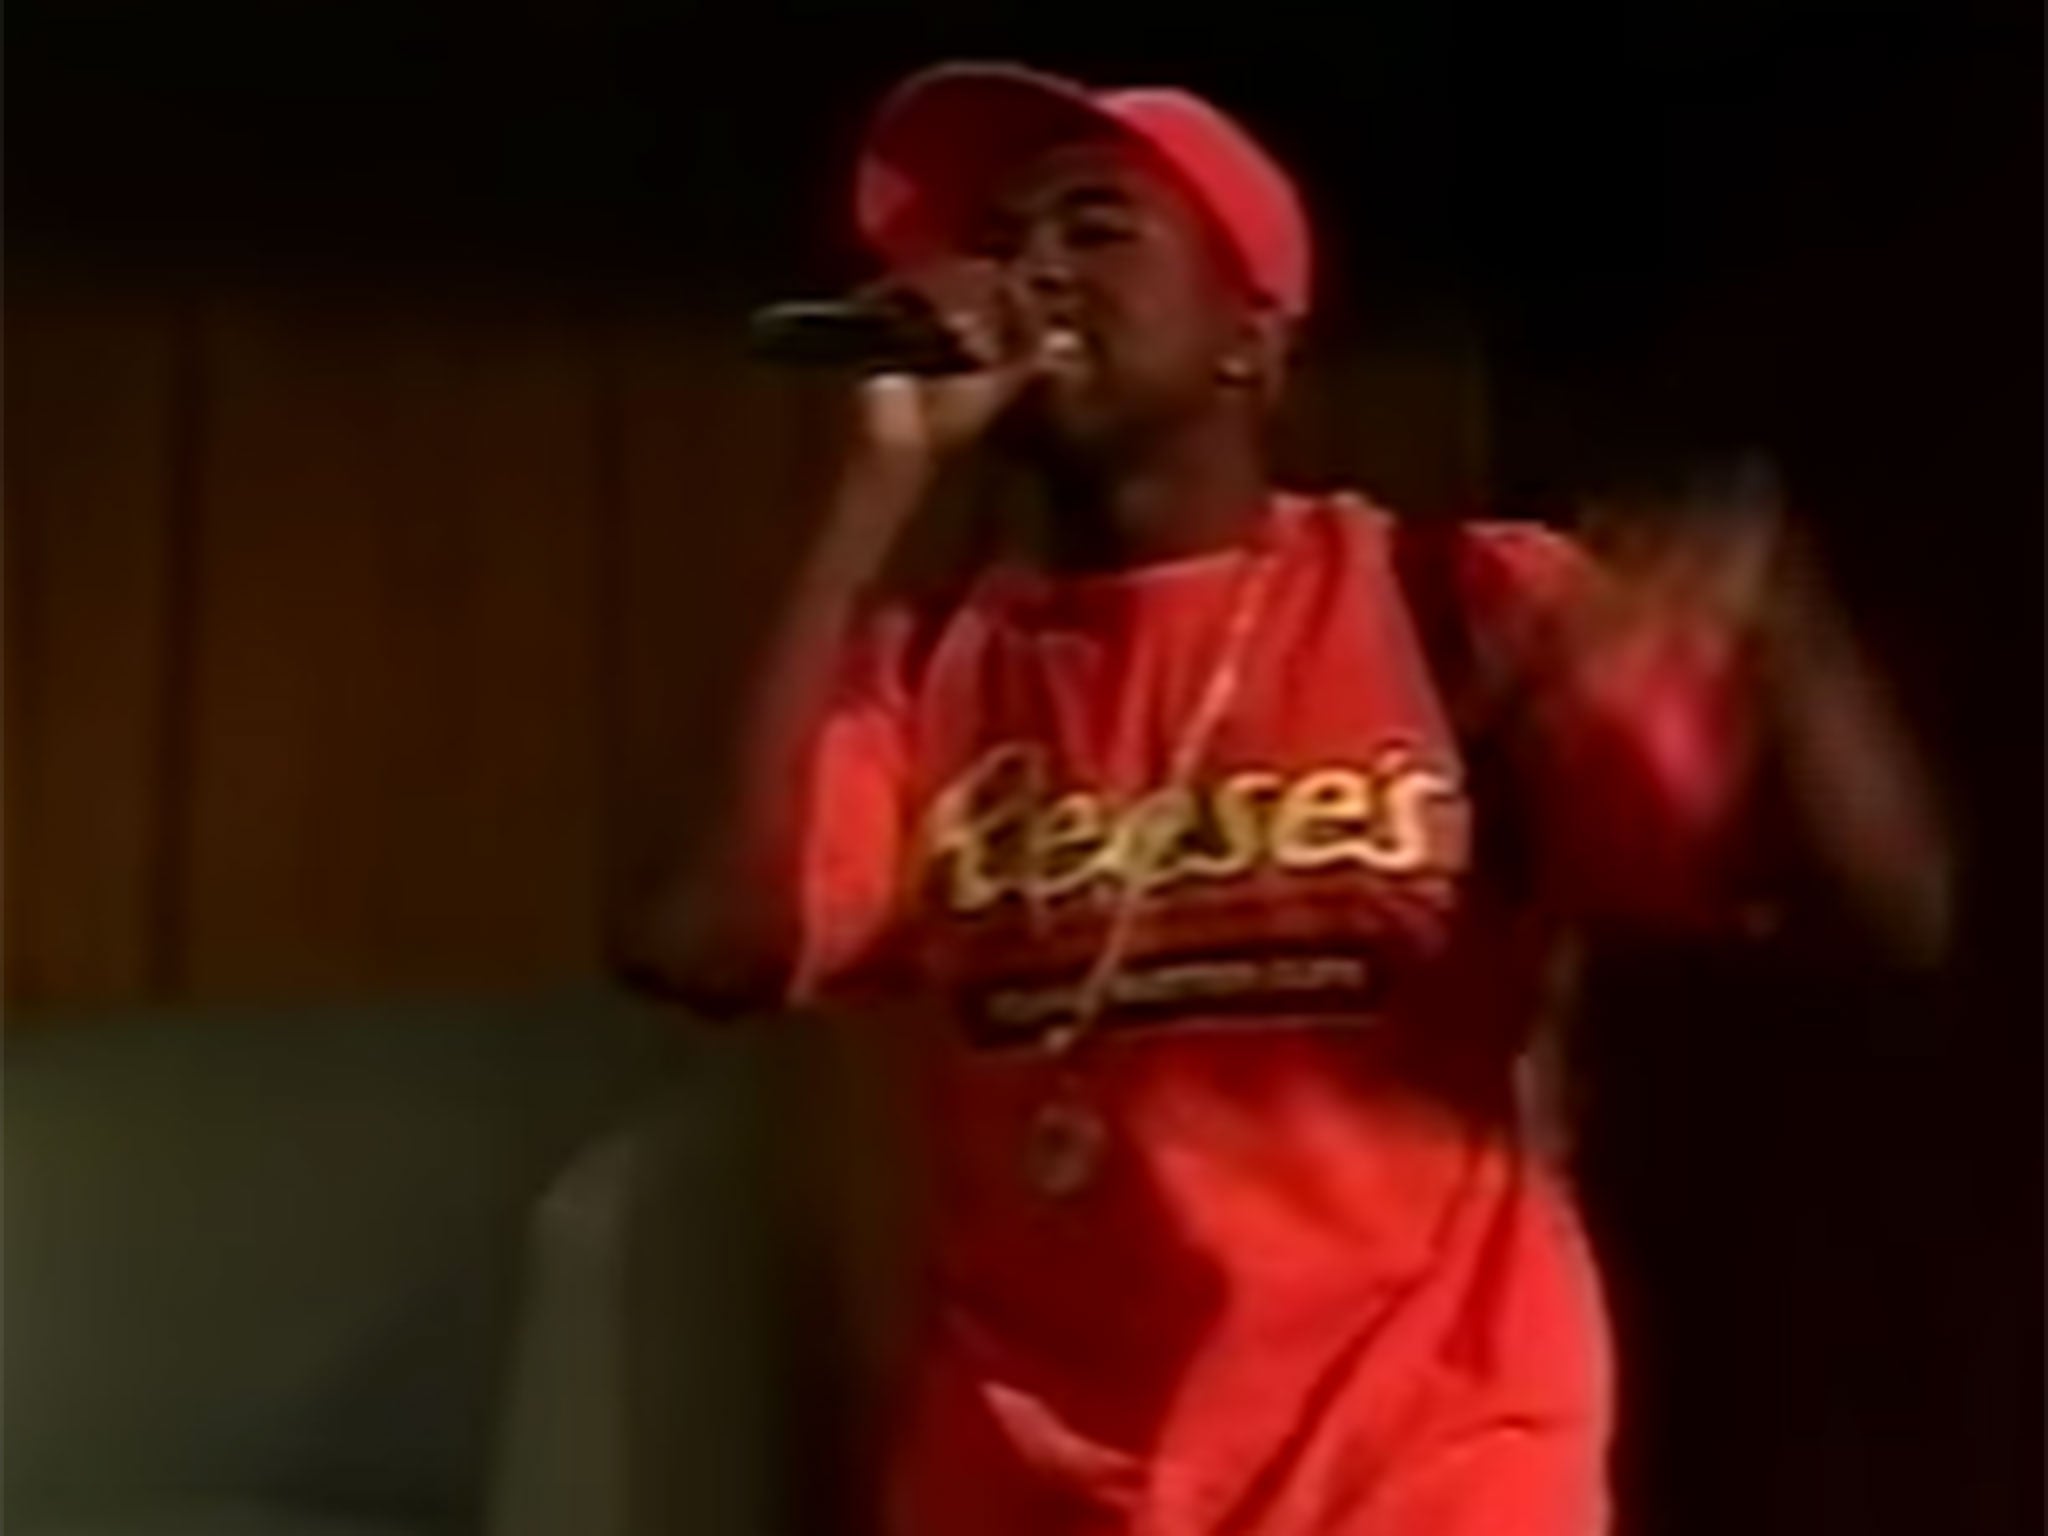 Kanye performing in 2003